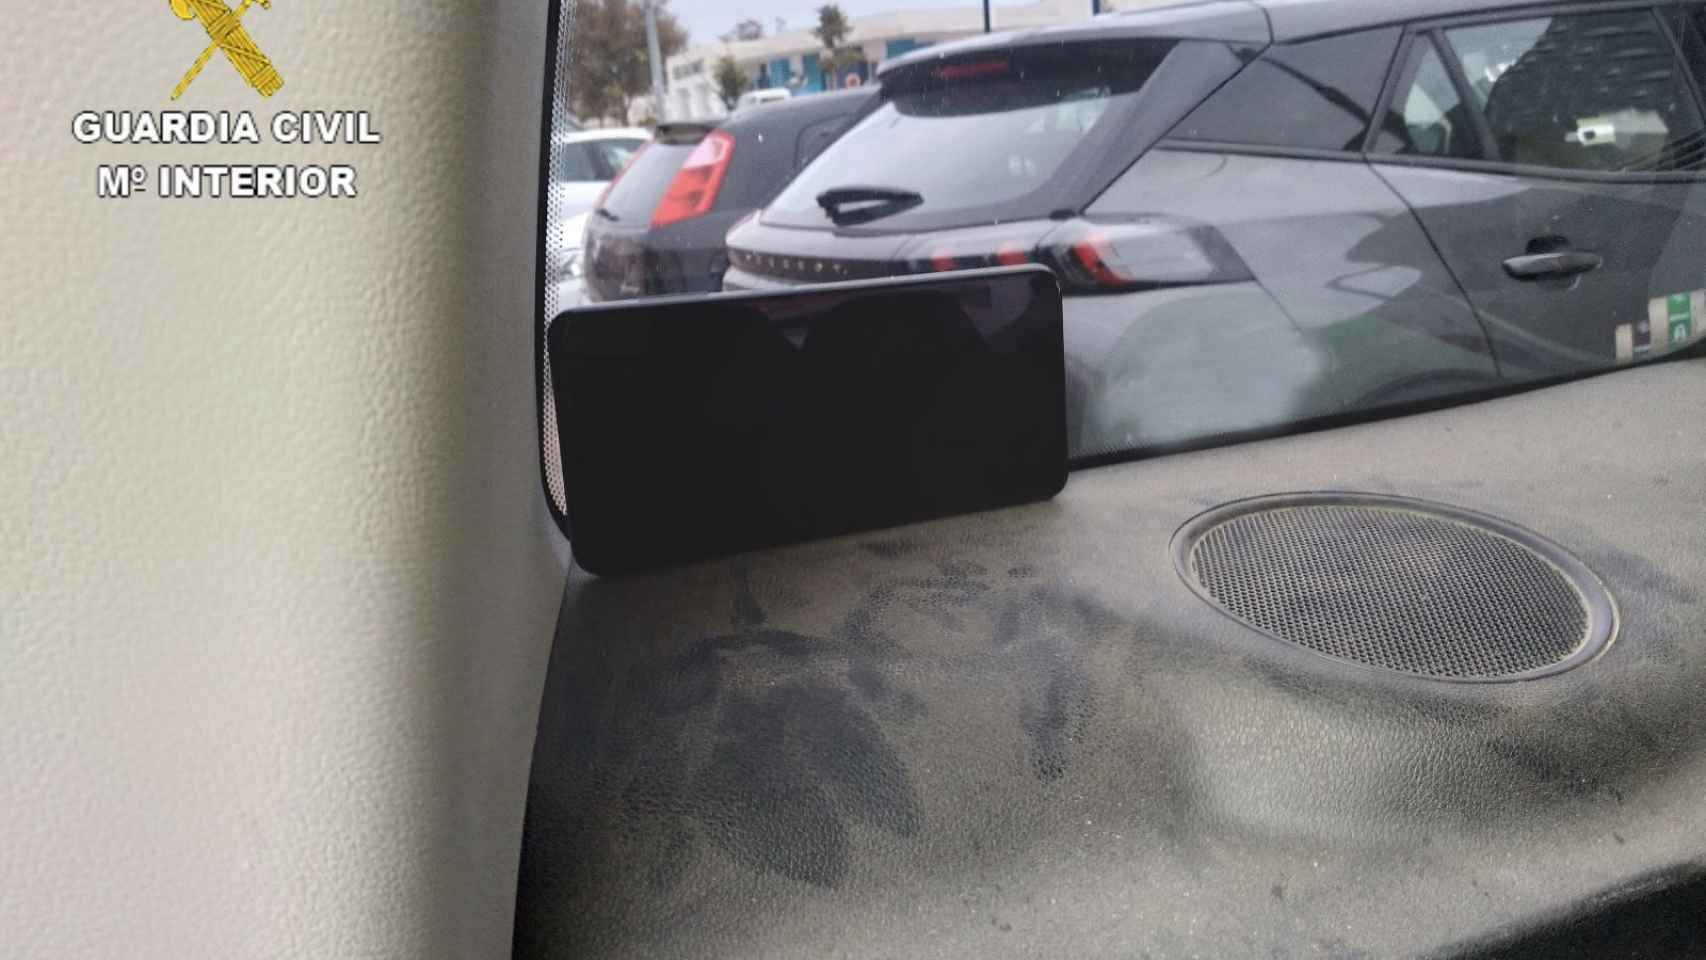 Imagen del móvil con el que vigilaba a su exmujer desde su vehículo aparcado en su puerta.